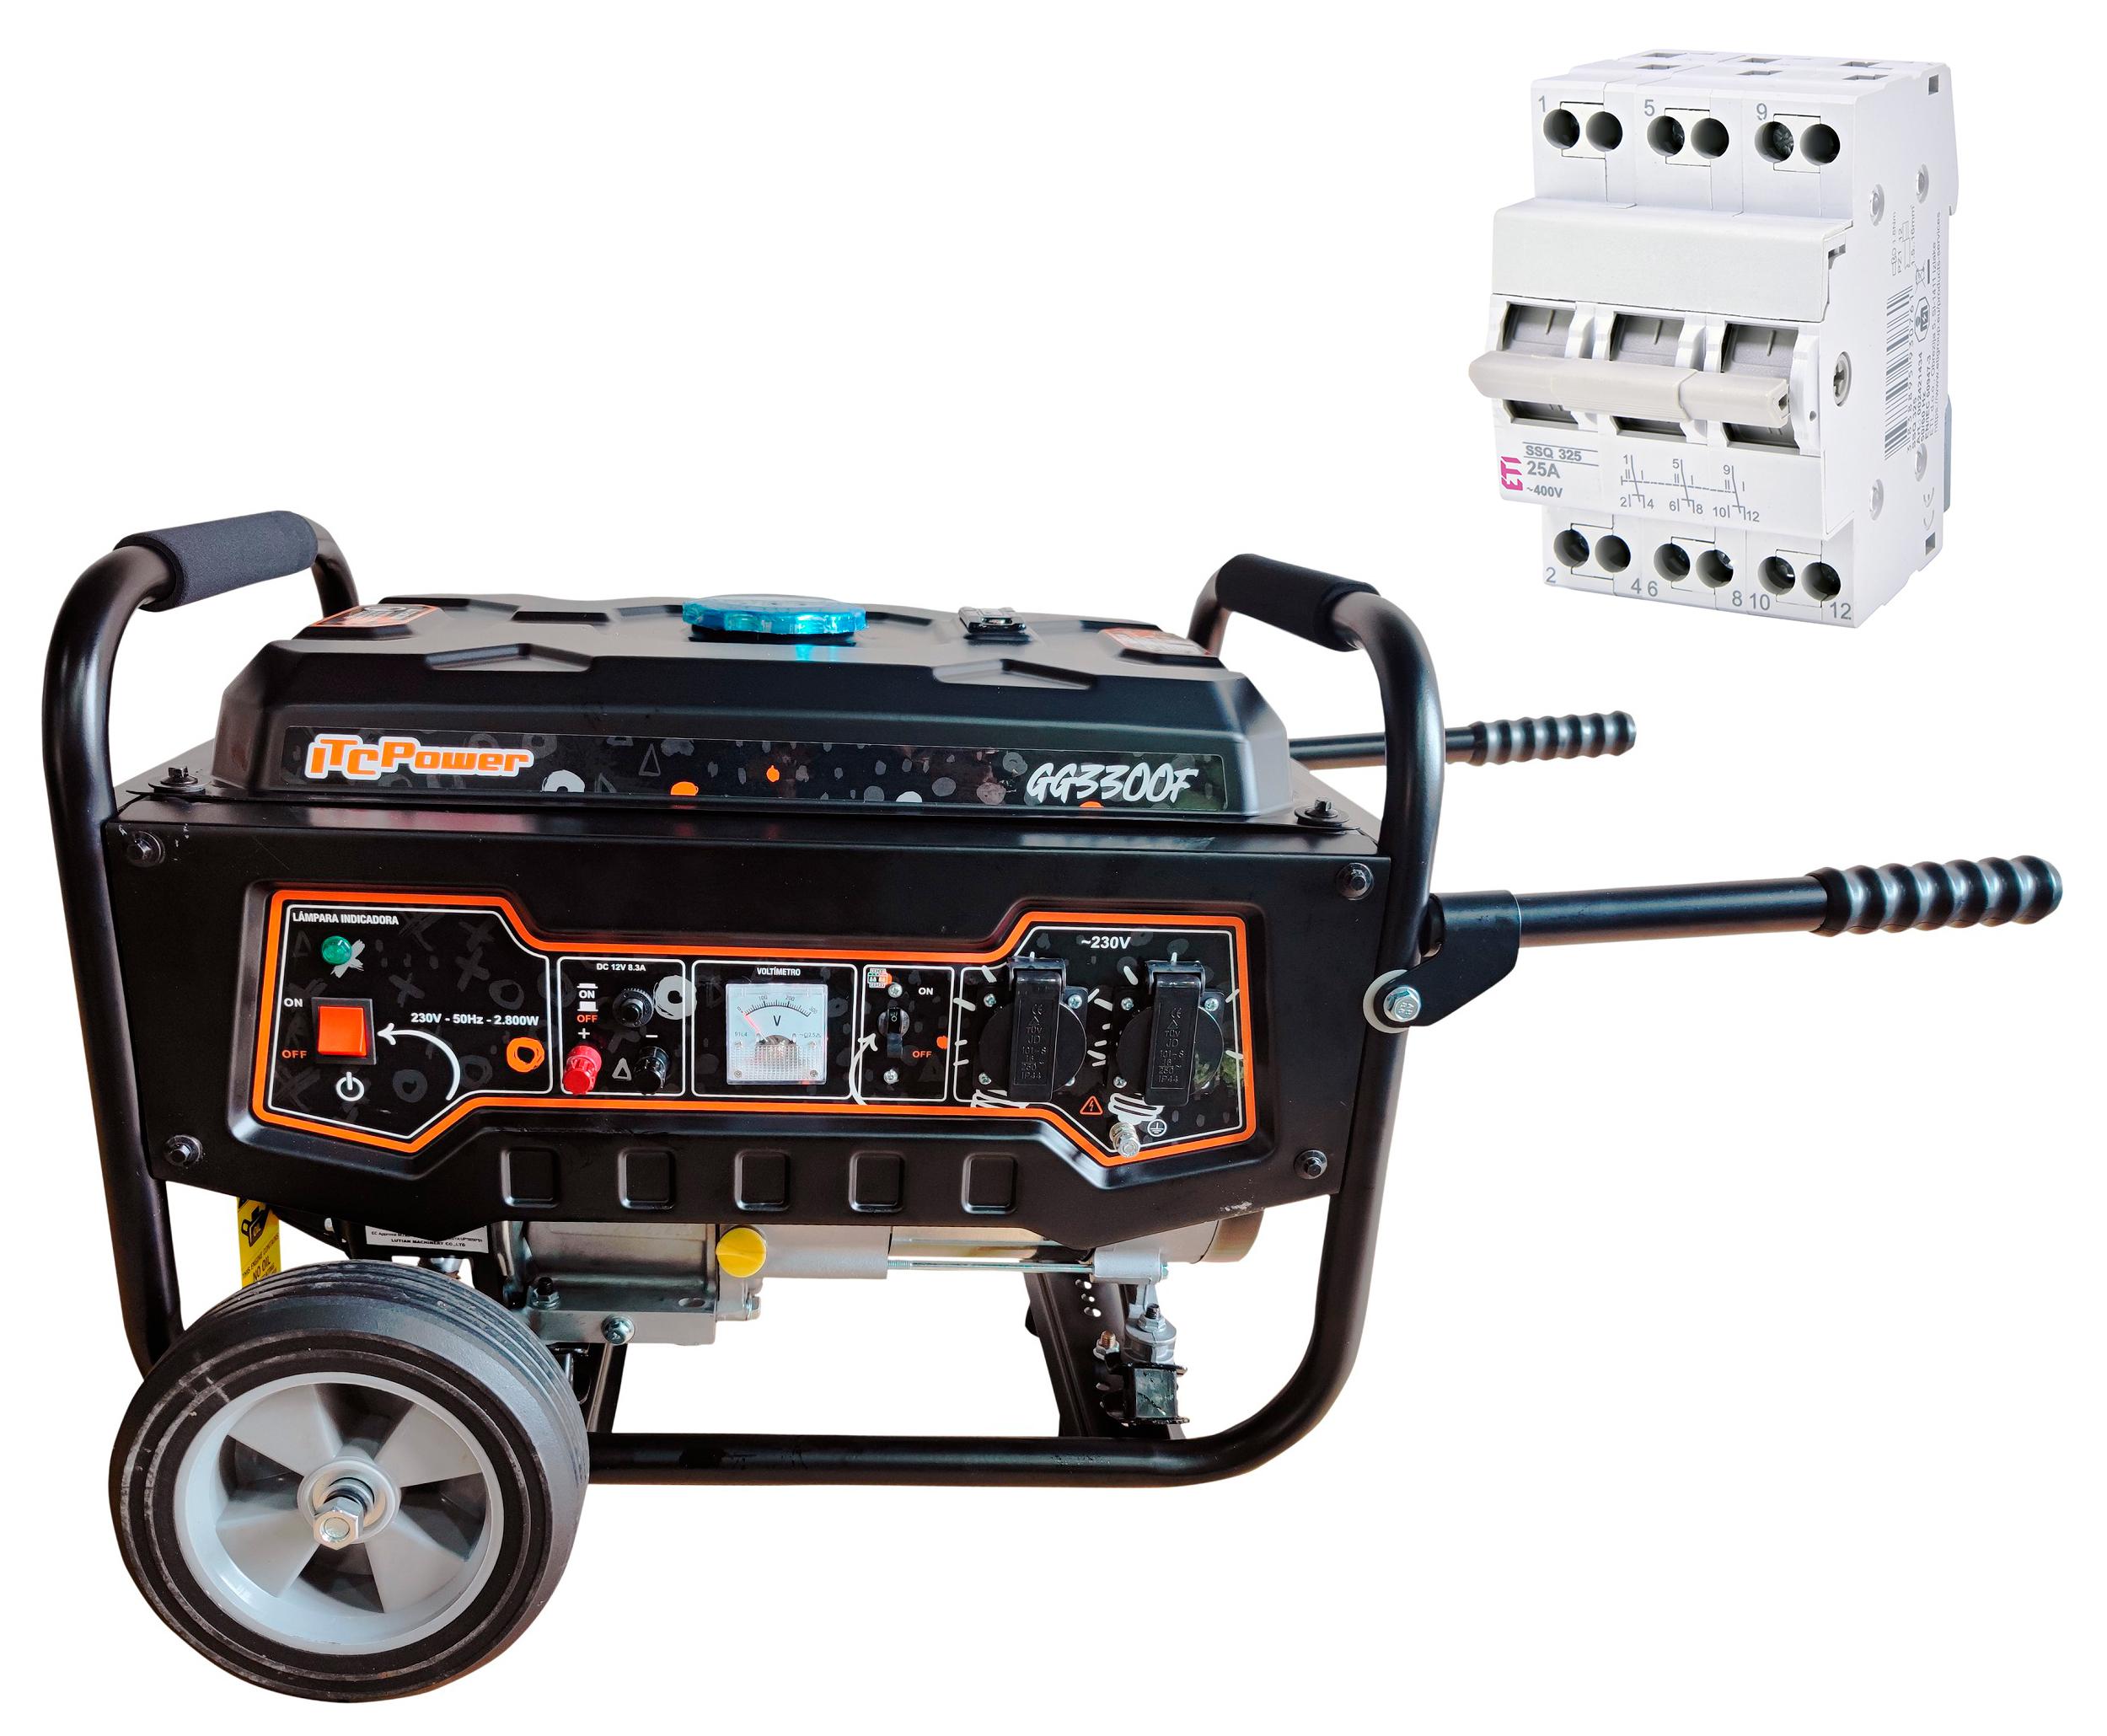 Купить генератор ITC Power GG3300F + переключатель трехпозиционный ETI SSQ 340 (002421435) в Чернигове